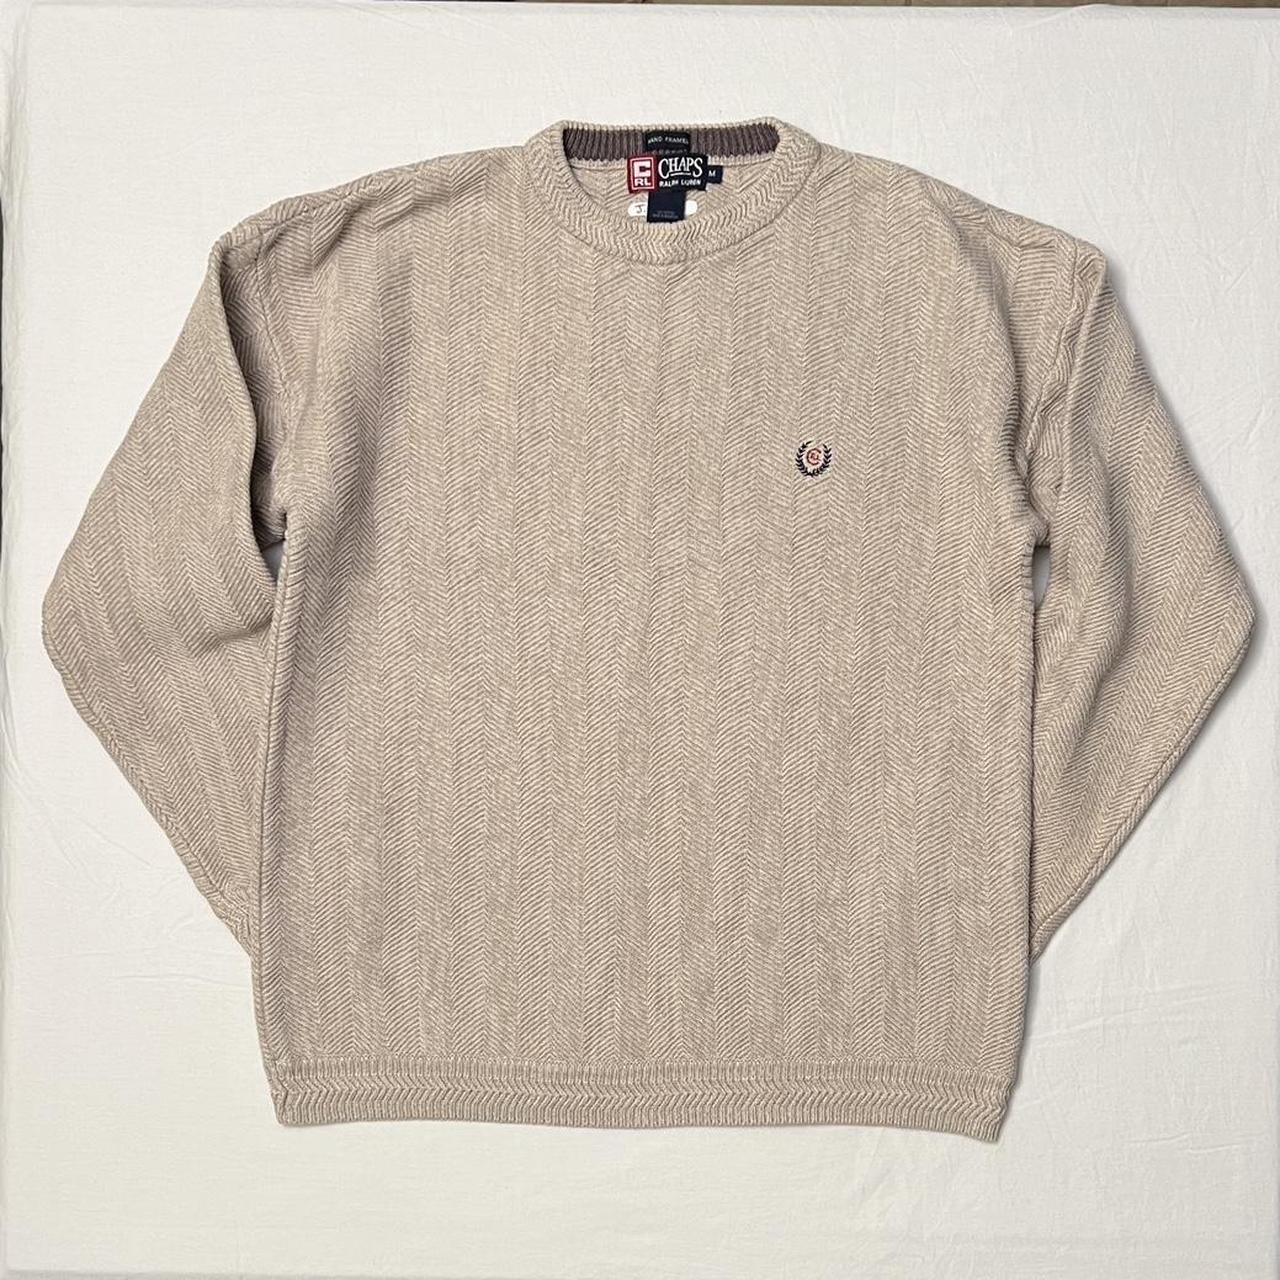 Ralph lauren-chaps-sweater - Depop